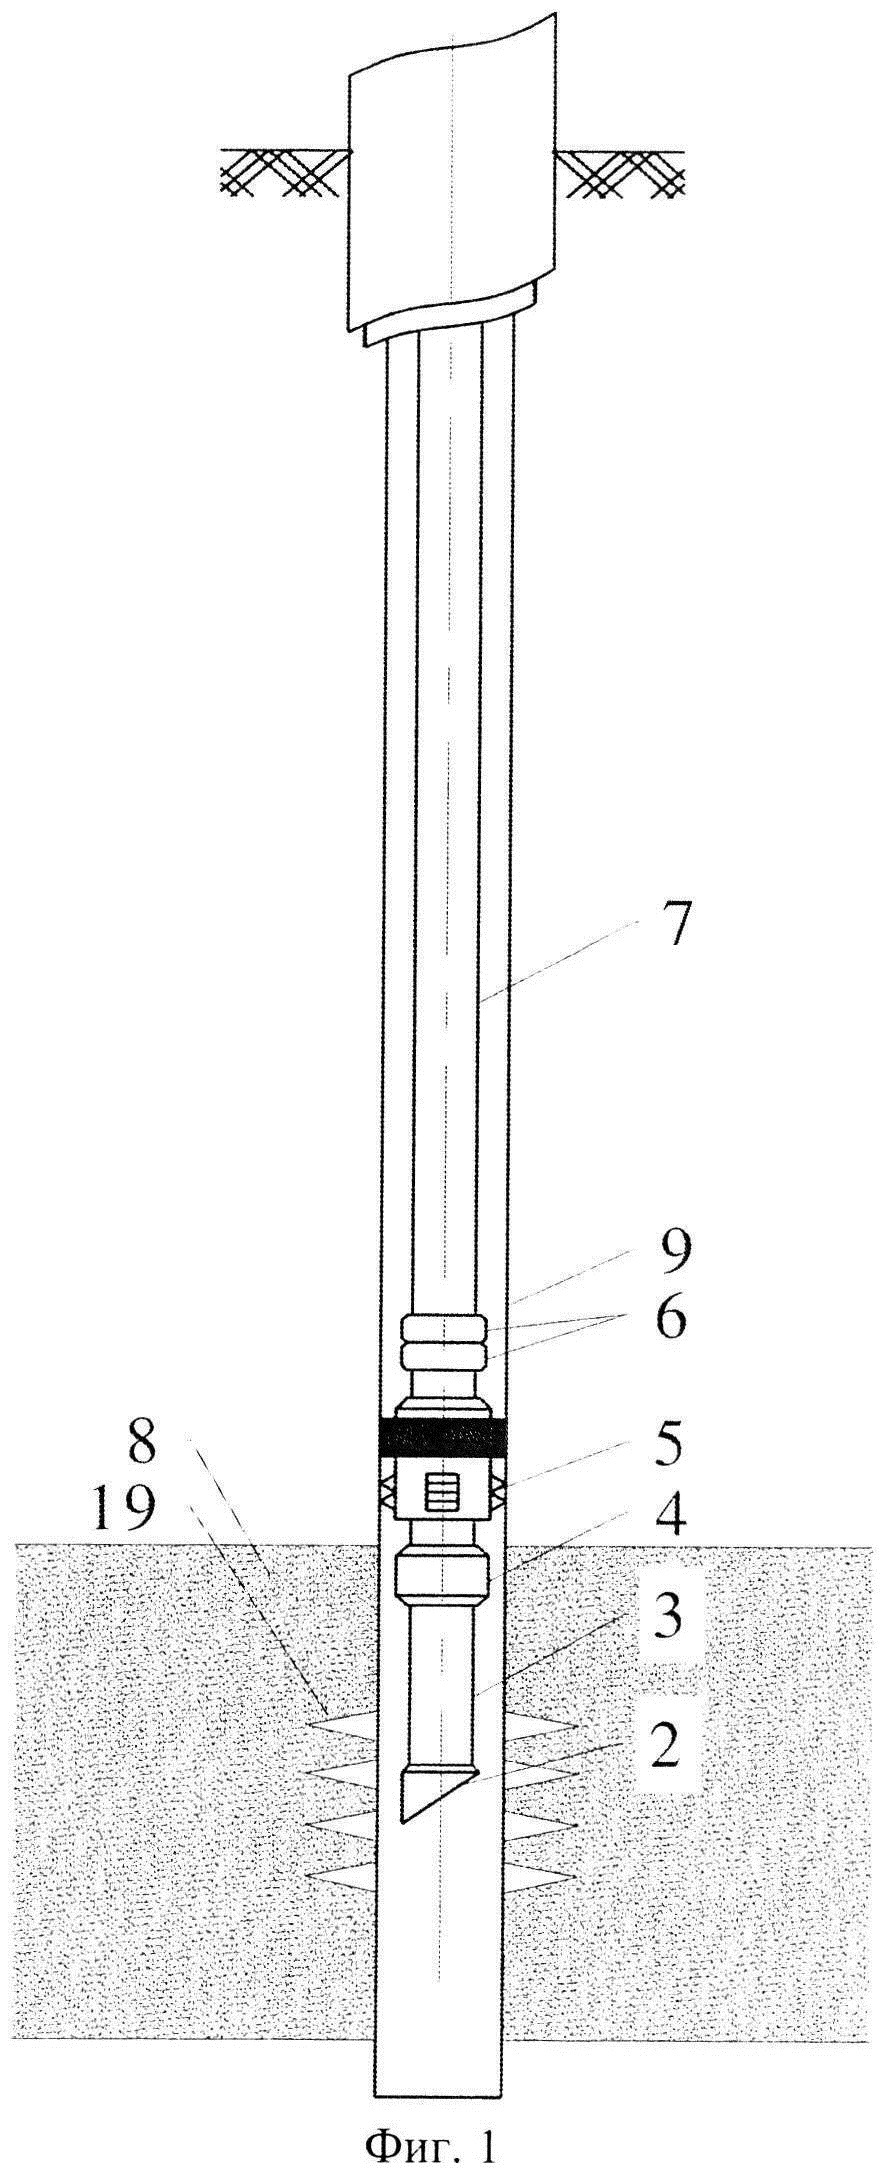 Способ оснащения глубокой газовой скважины компоновкой лифтовой колонны